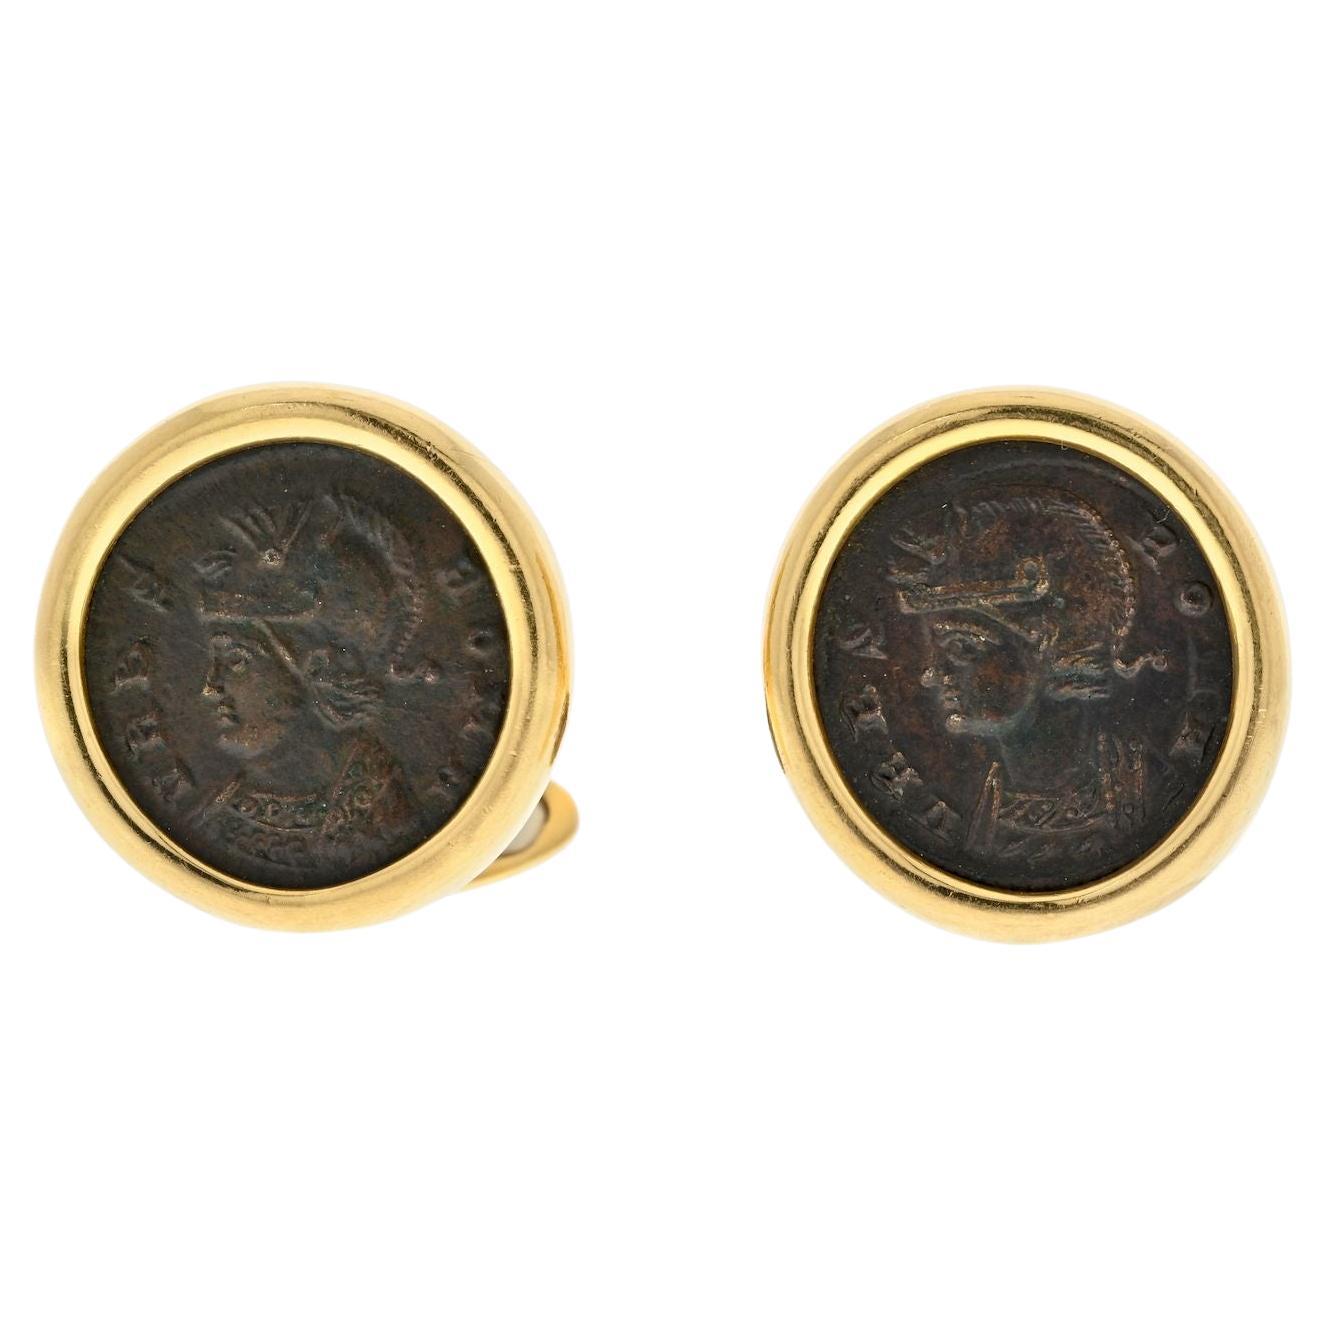 Bvlgari 18k Yellow Gold Coin Cufflinks